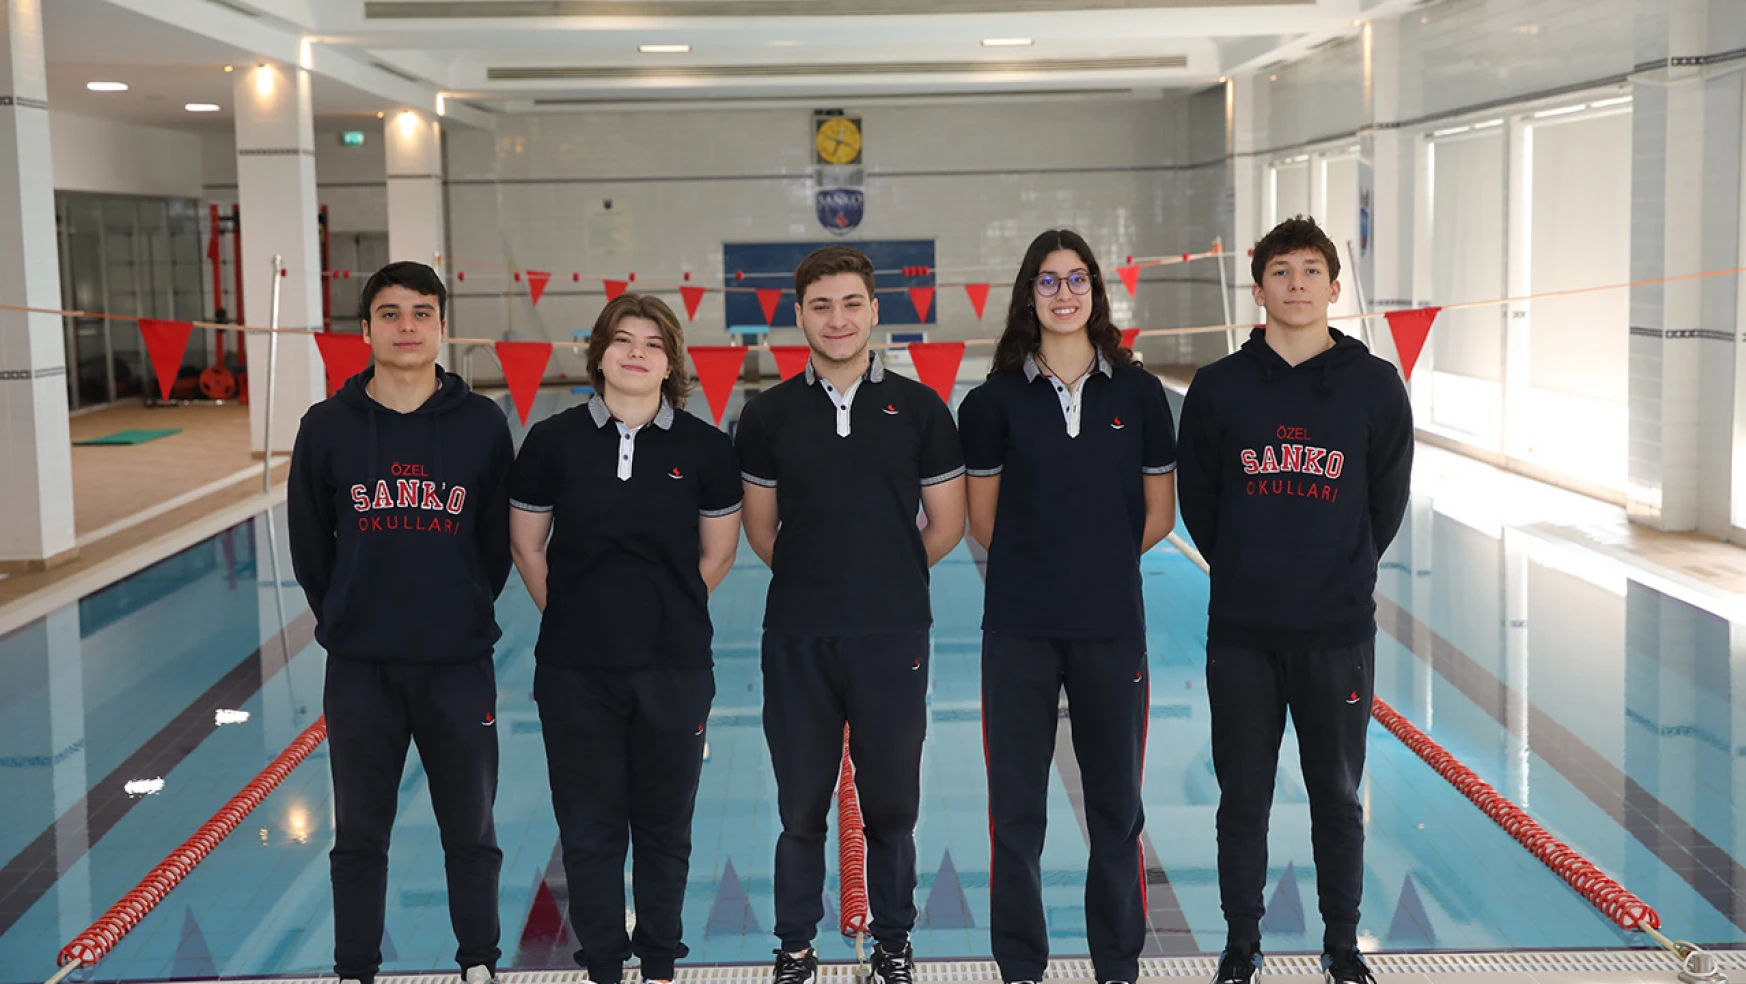 SANKO Okulları, yüzmede 5 öğrenciyle Türkiye'yi temsil edecek